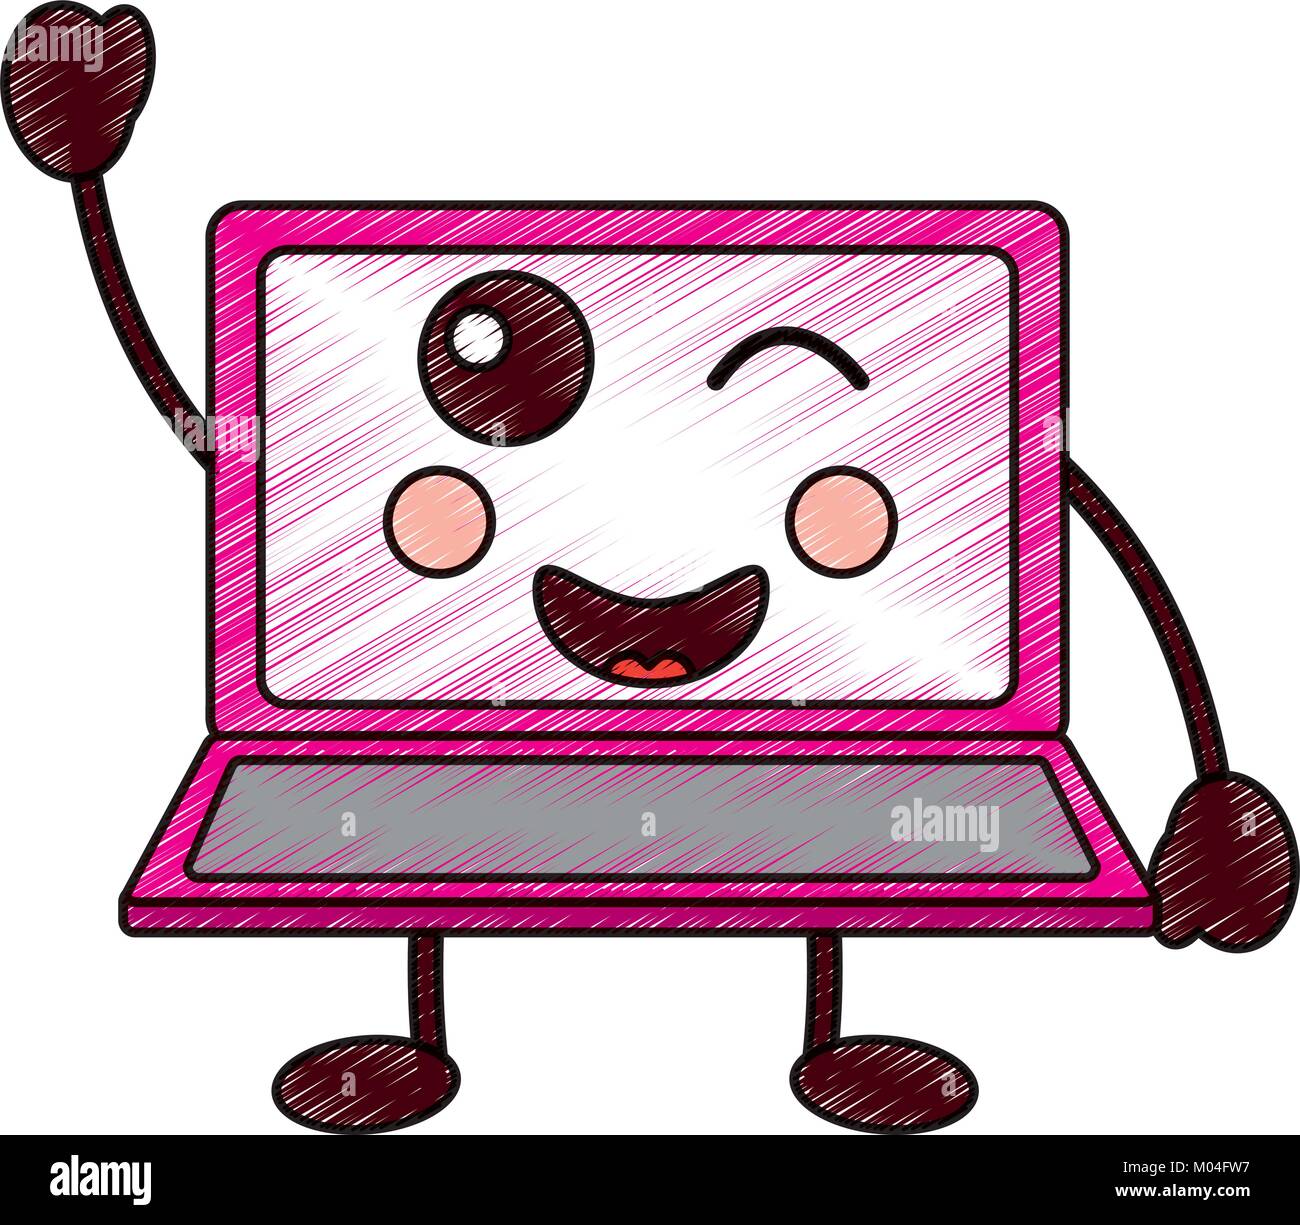 laptop computer kawaii character screen Stock Vector Image & Art - Alamy